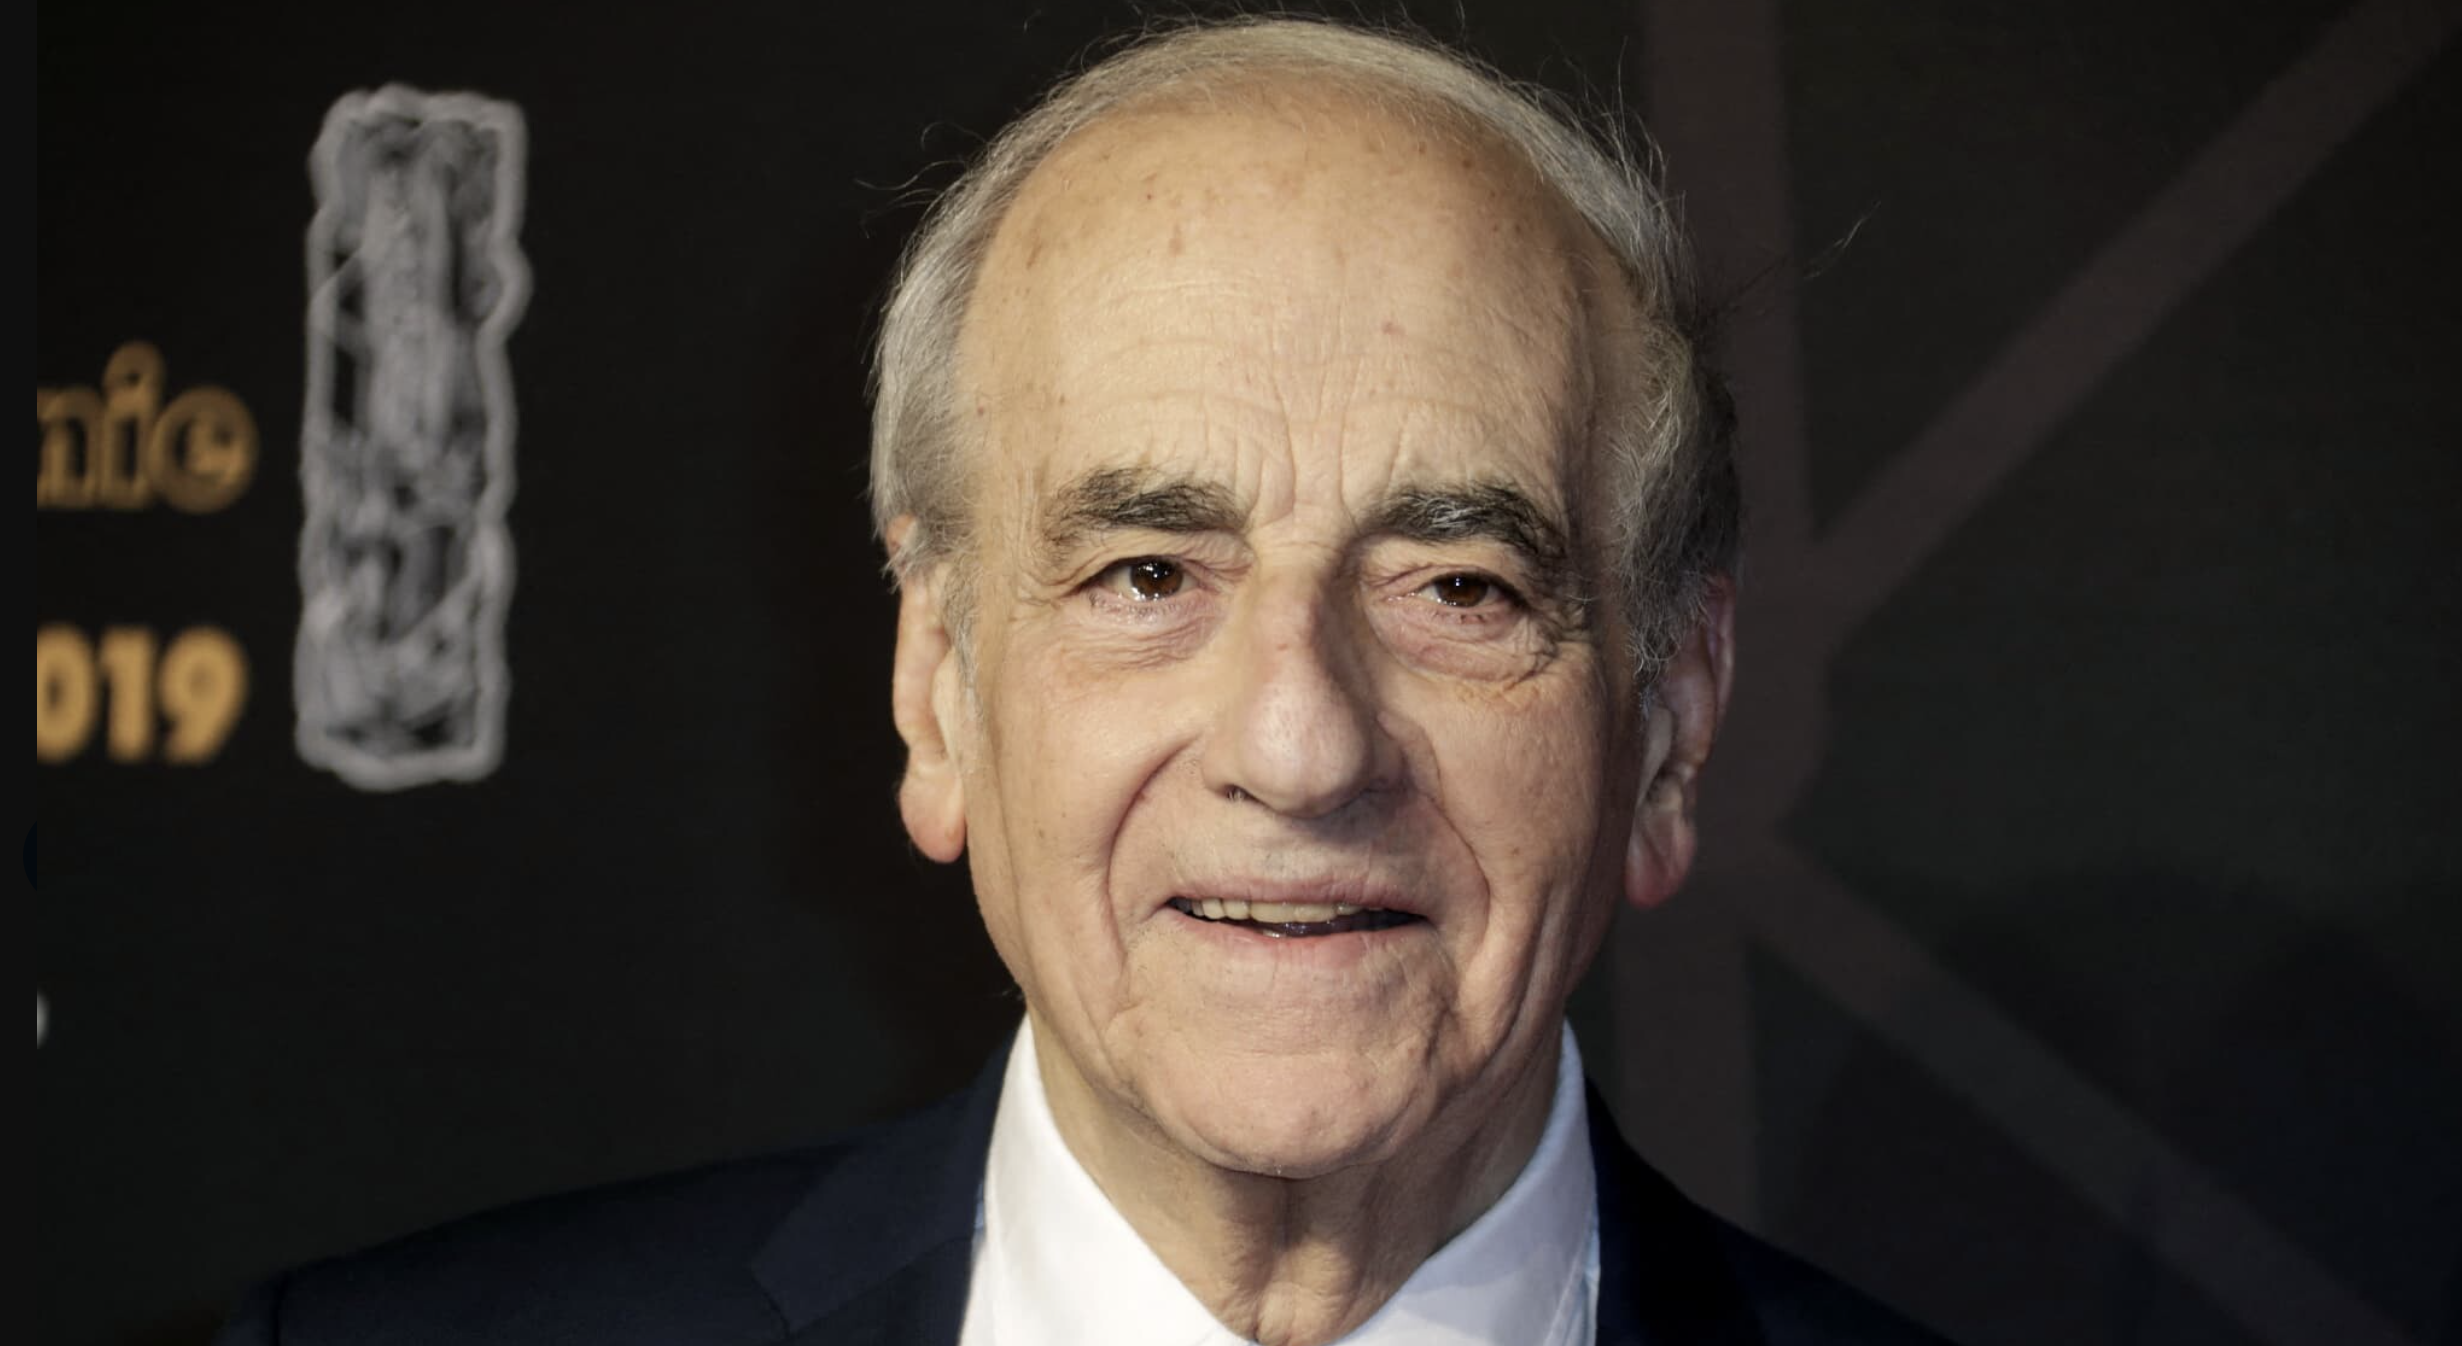     Le journaliste politique Jean-Pierre Elkabbach est décédé à 86 ans

